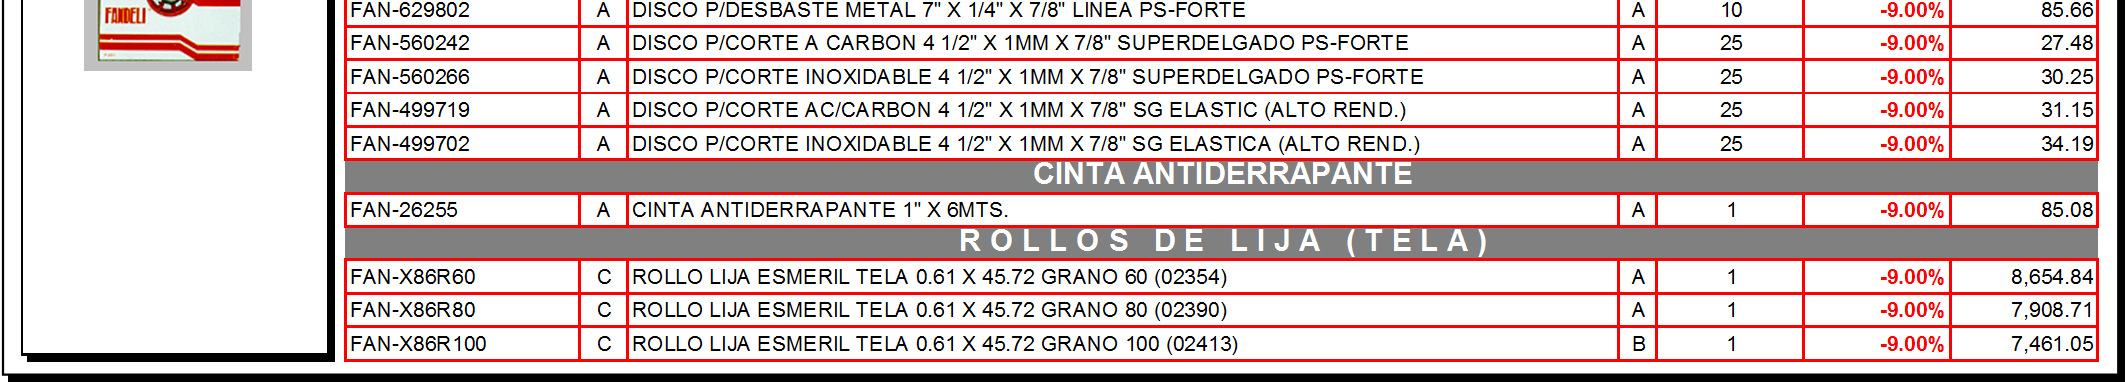 00% 10.68 FAN-DLVT-5-150 A DISCO DE LIJA C/VELCRO 5" GRANO 150 RESPALDO TELA(ROJO) X088 (CLAVE 22461) A 50-9.00% 10.68 FAN-DLVT-5-180 A DISCO DE LIJA C/VELCRO 5" GRANO 180 RESPALDO TELA(ROJO) X088 (CLAVE 21690) A 50-9.